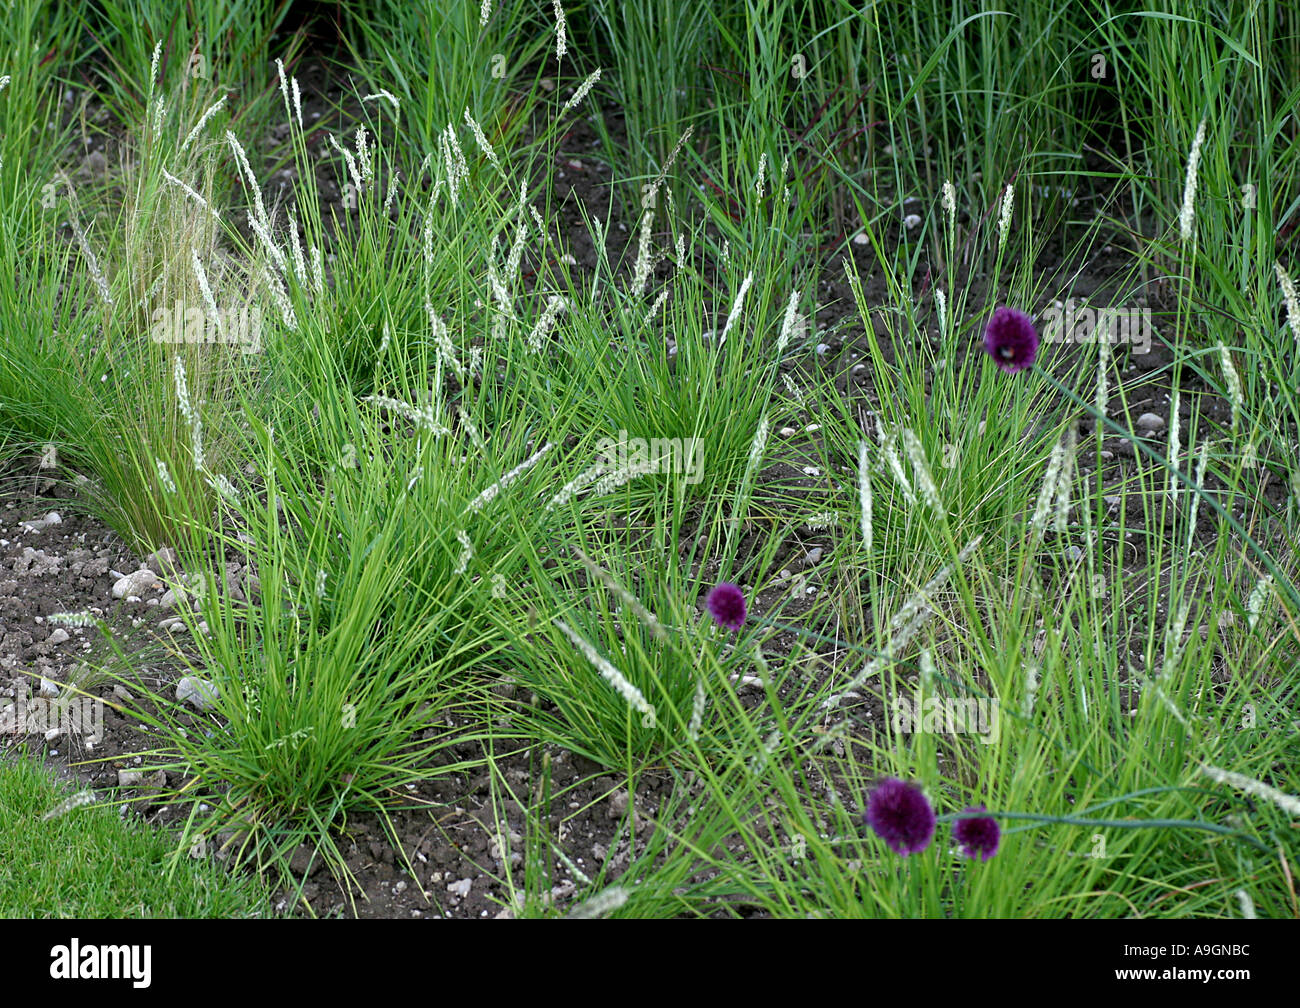 hairy melick (Melica ciliata), grasses Stock Photo